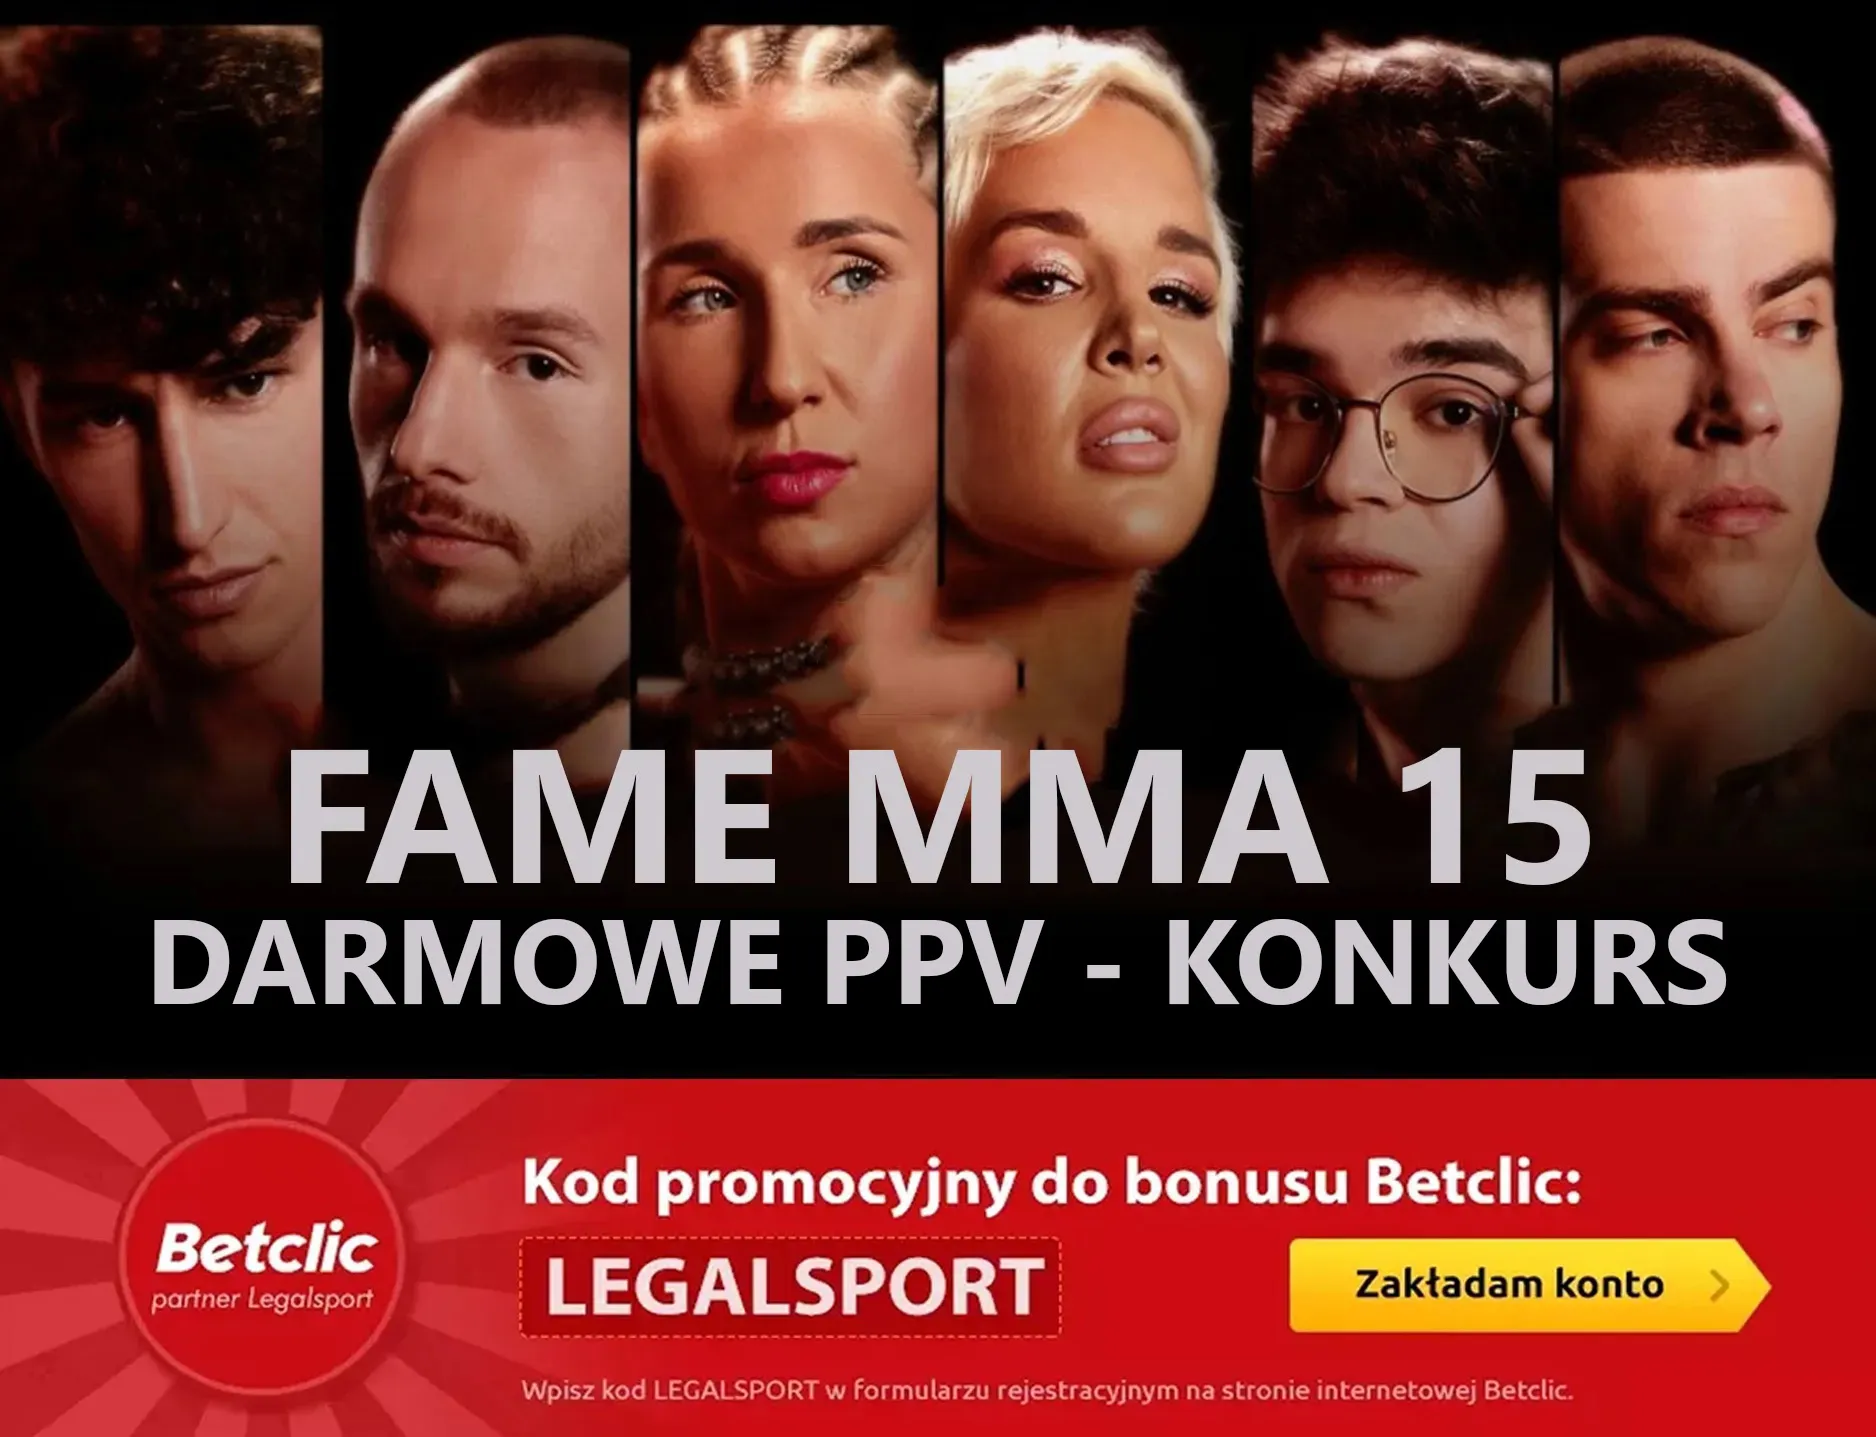 Darmowe PPV na FAME MMA 15 - konkurs